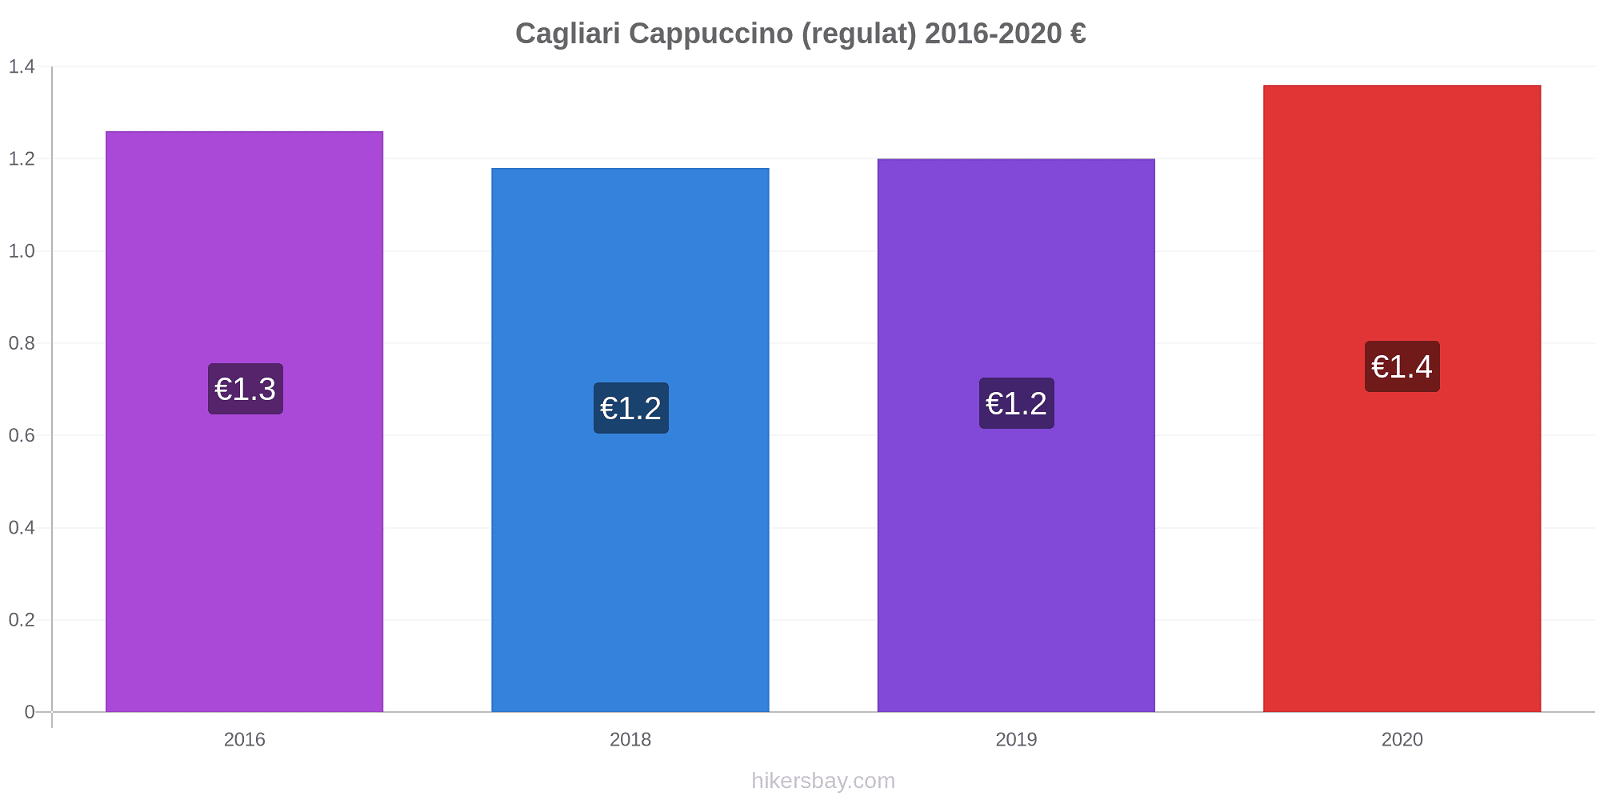 Cagliari modificări de preț Cappuccino (regulat) hikersbay.com